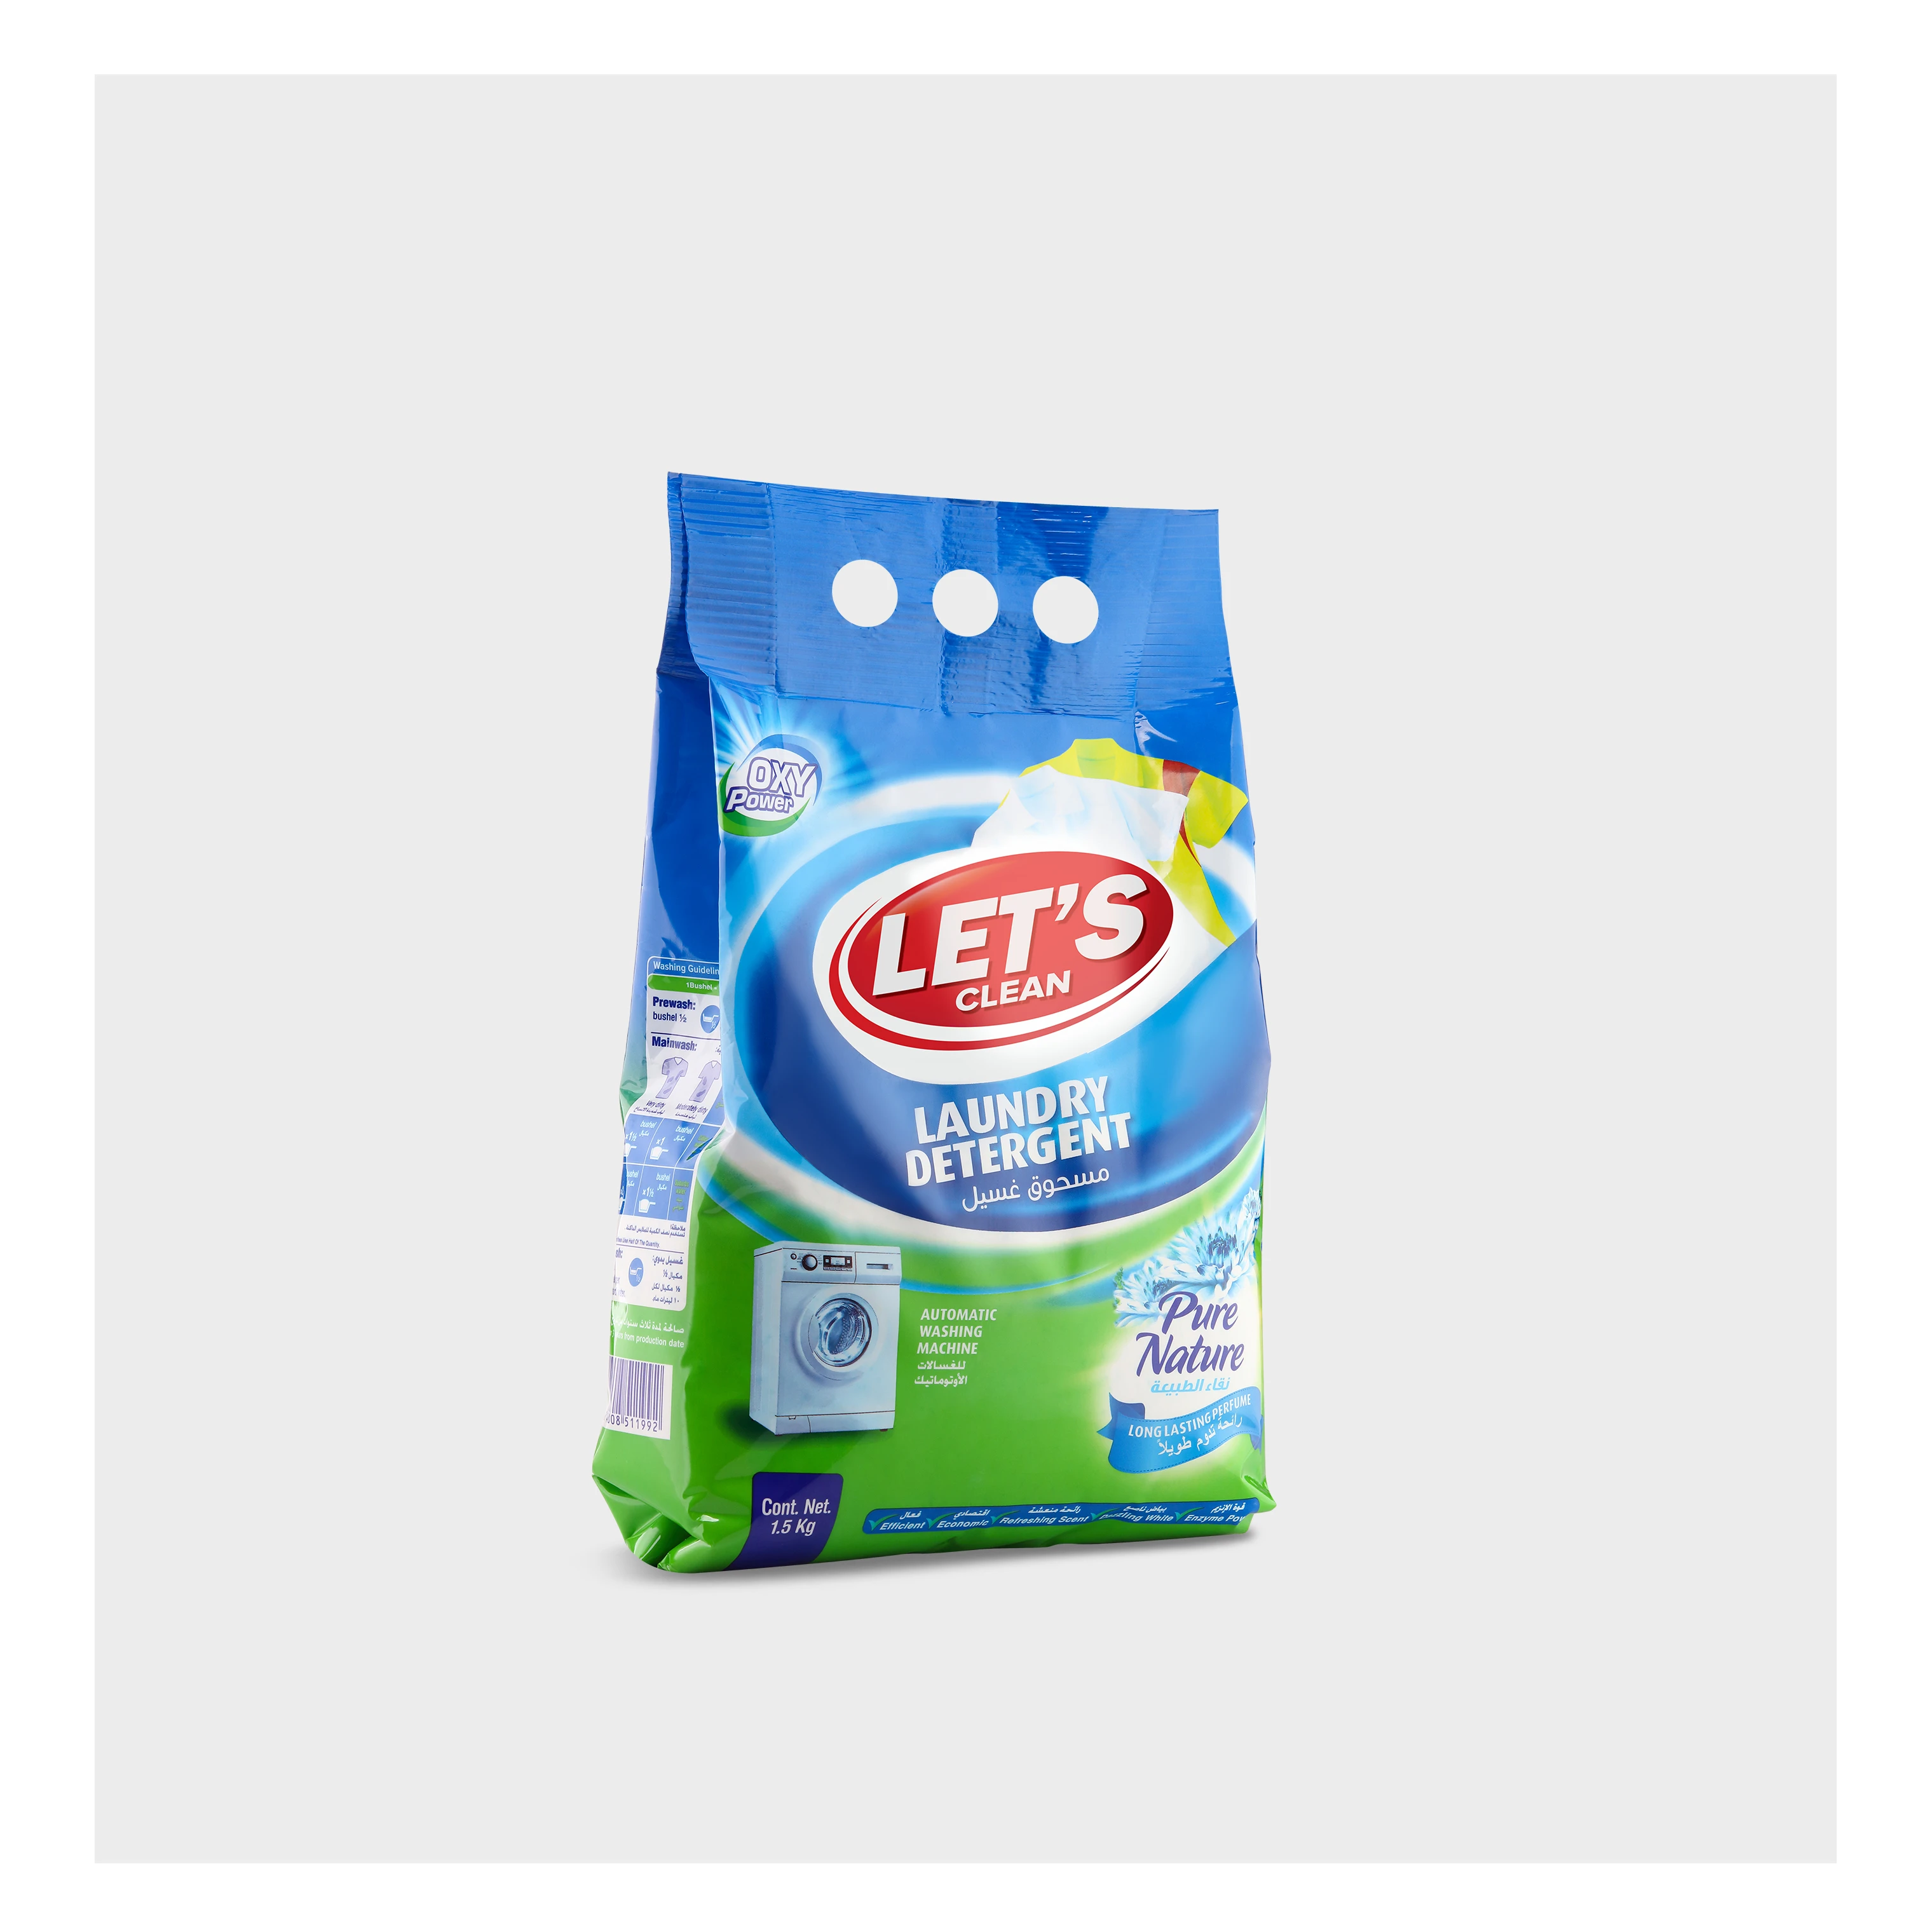 LET'S Clean Laundry Detergent 1.5 kg